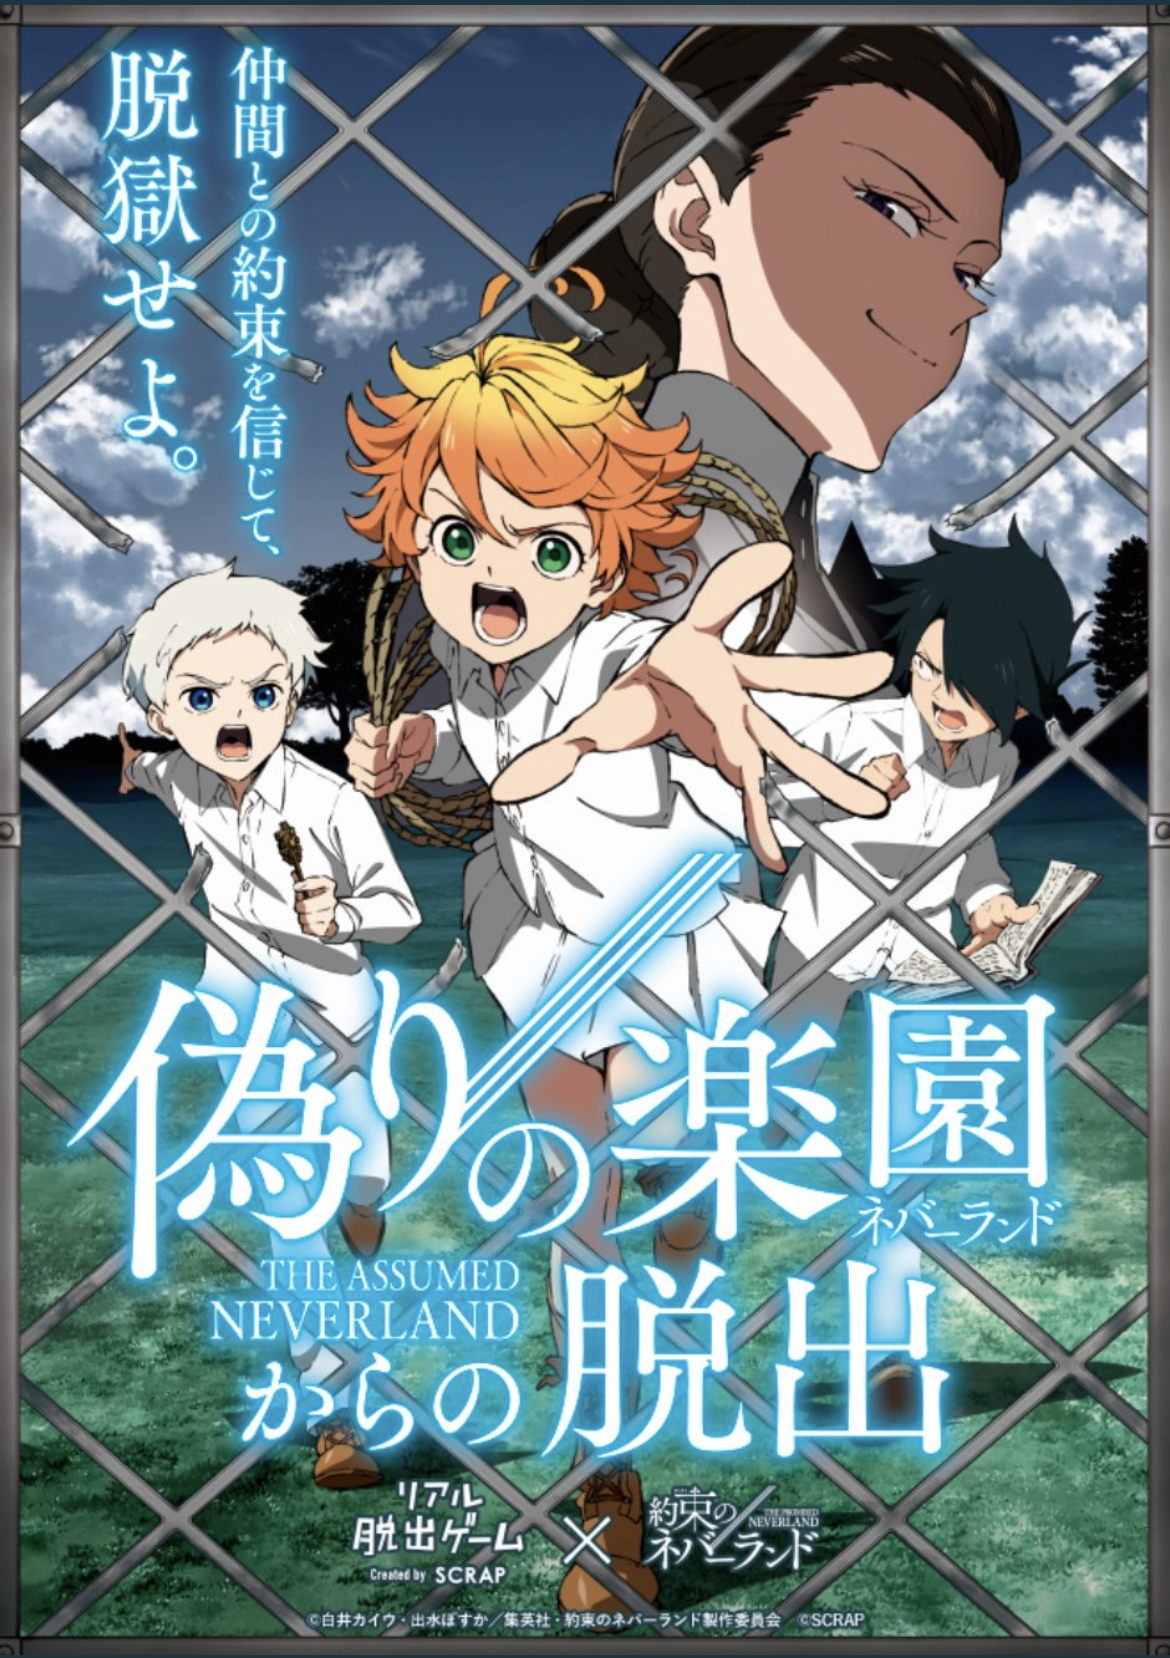 The Promised Neverland – 13 (S2 01) – Freedom! Horrible, Horrible Freedom!  – RABUJOI – An Anime Blog